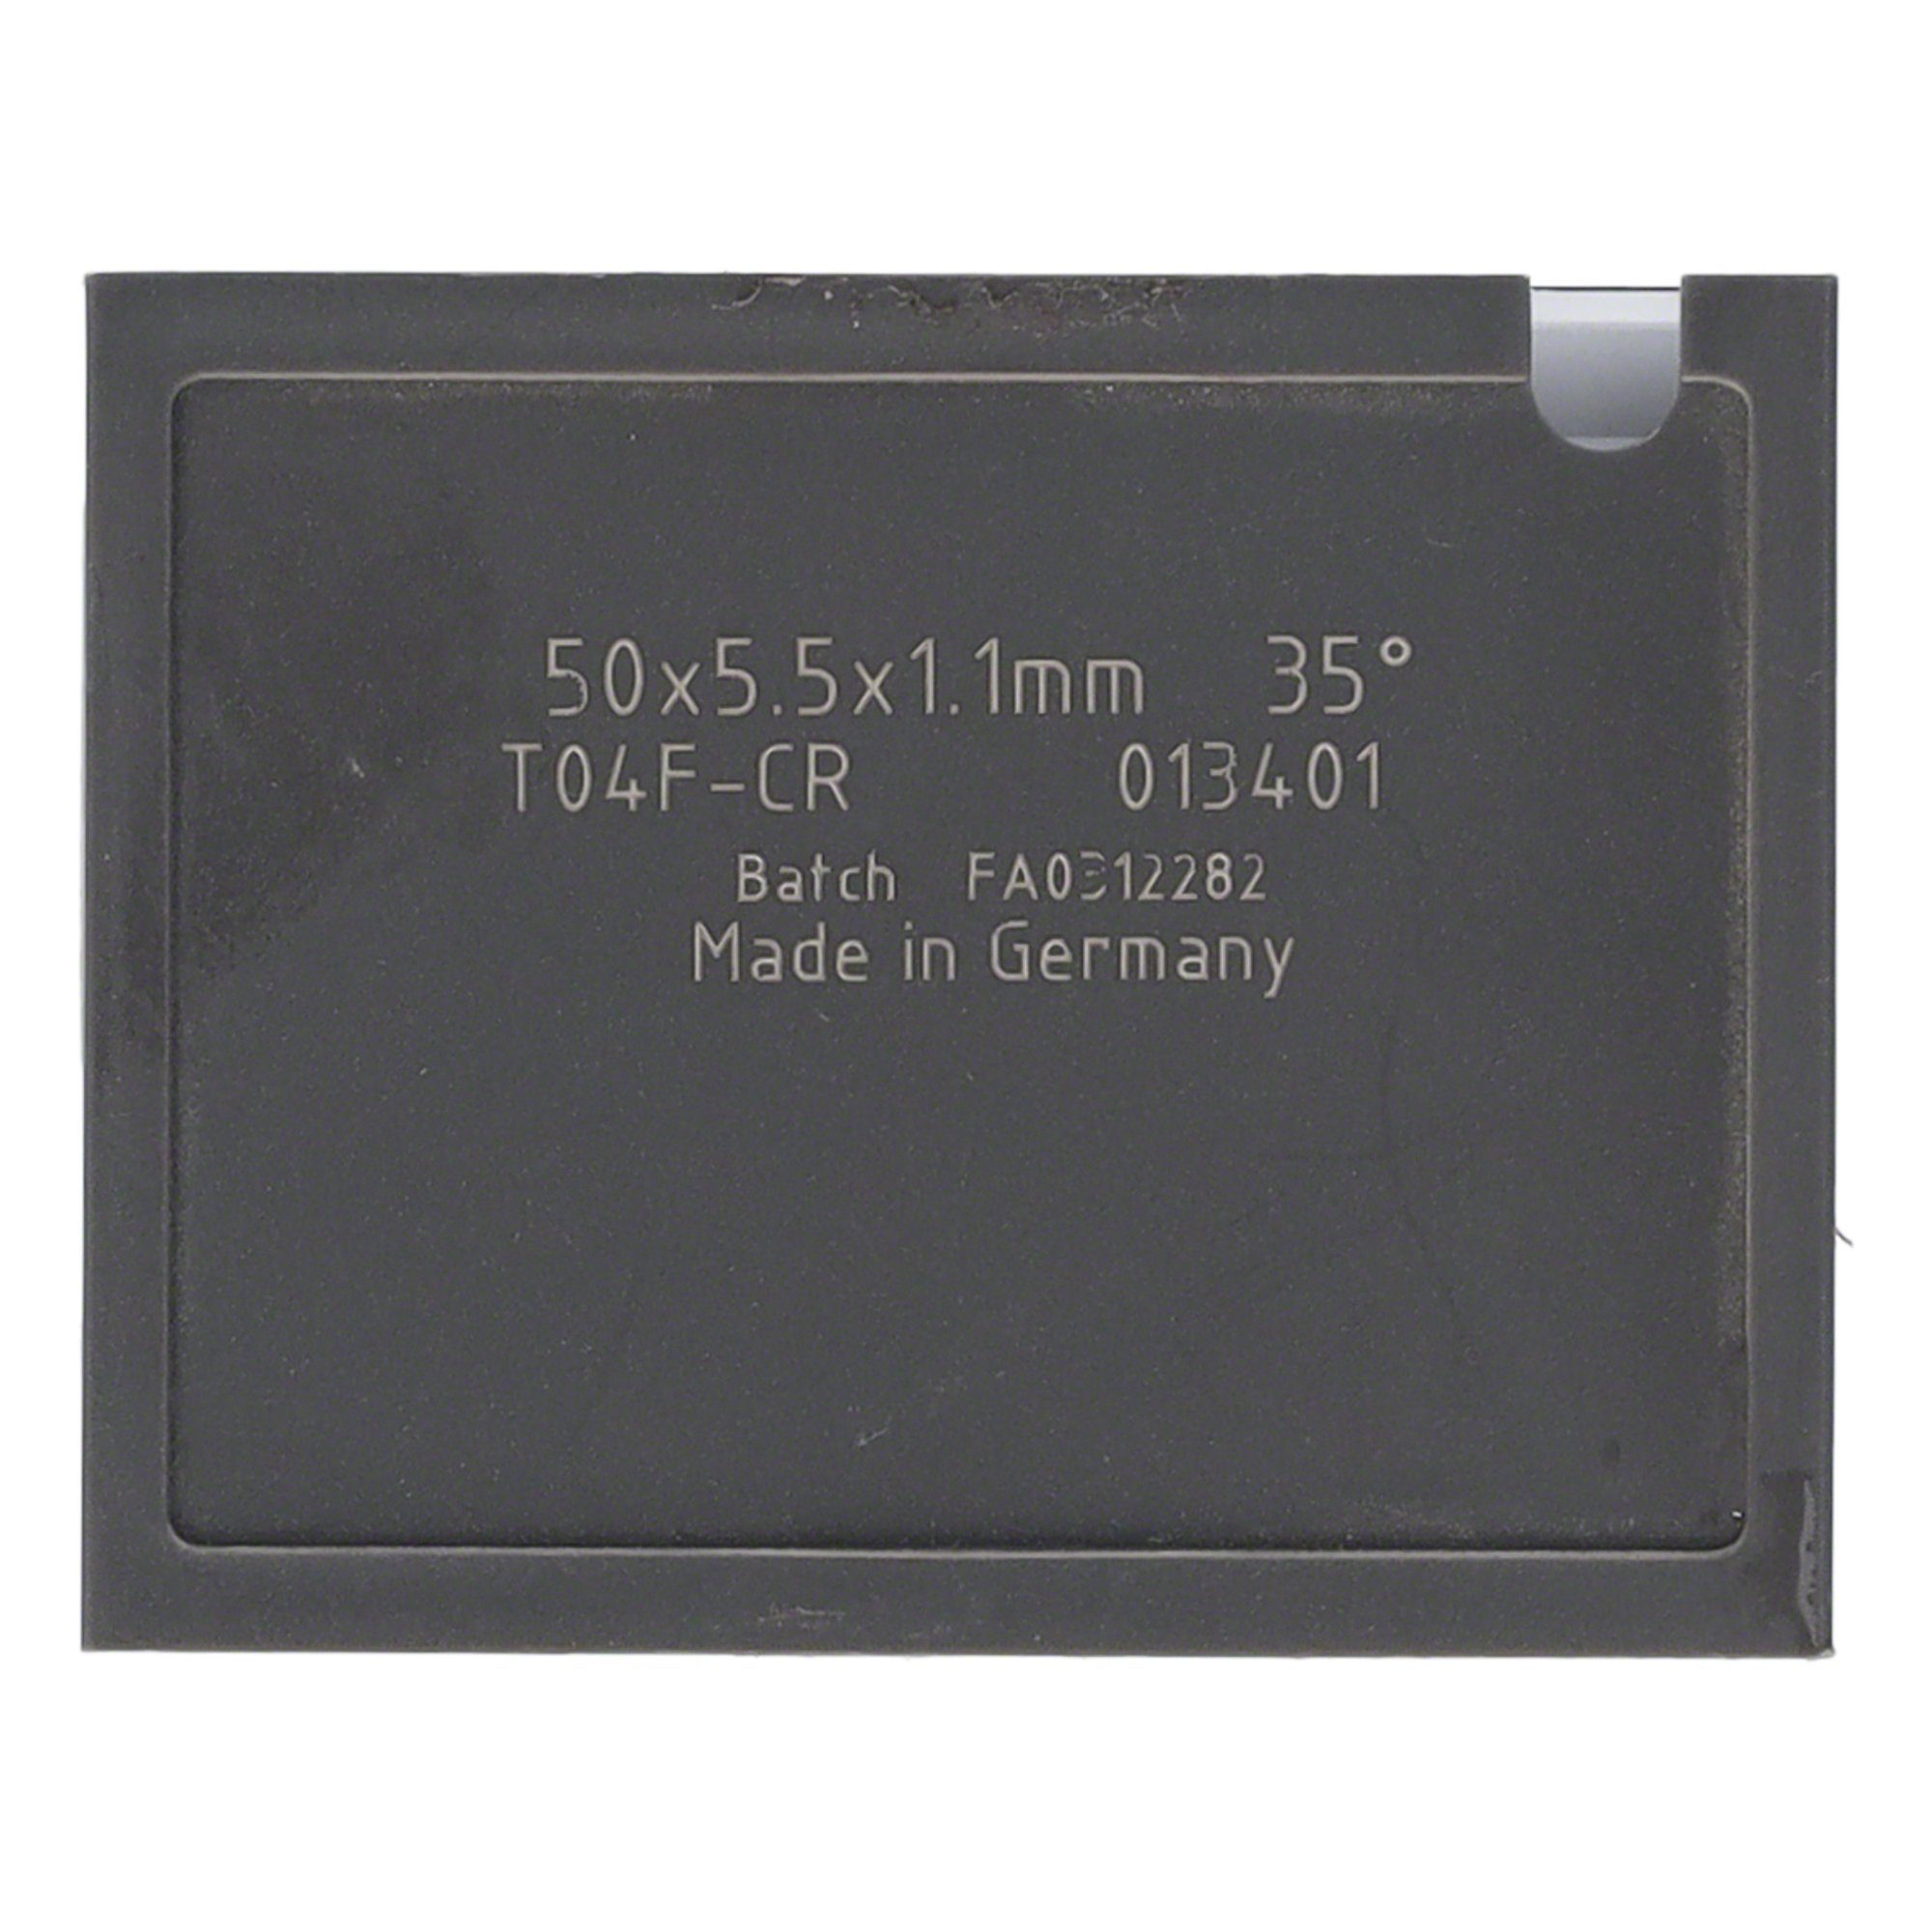 Tigra Wendeplattenfräser Mini-Wendeplatte 38 Brust - und T04F St. 25x5,5x1,1mm Quernut 10